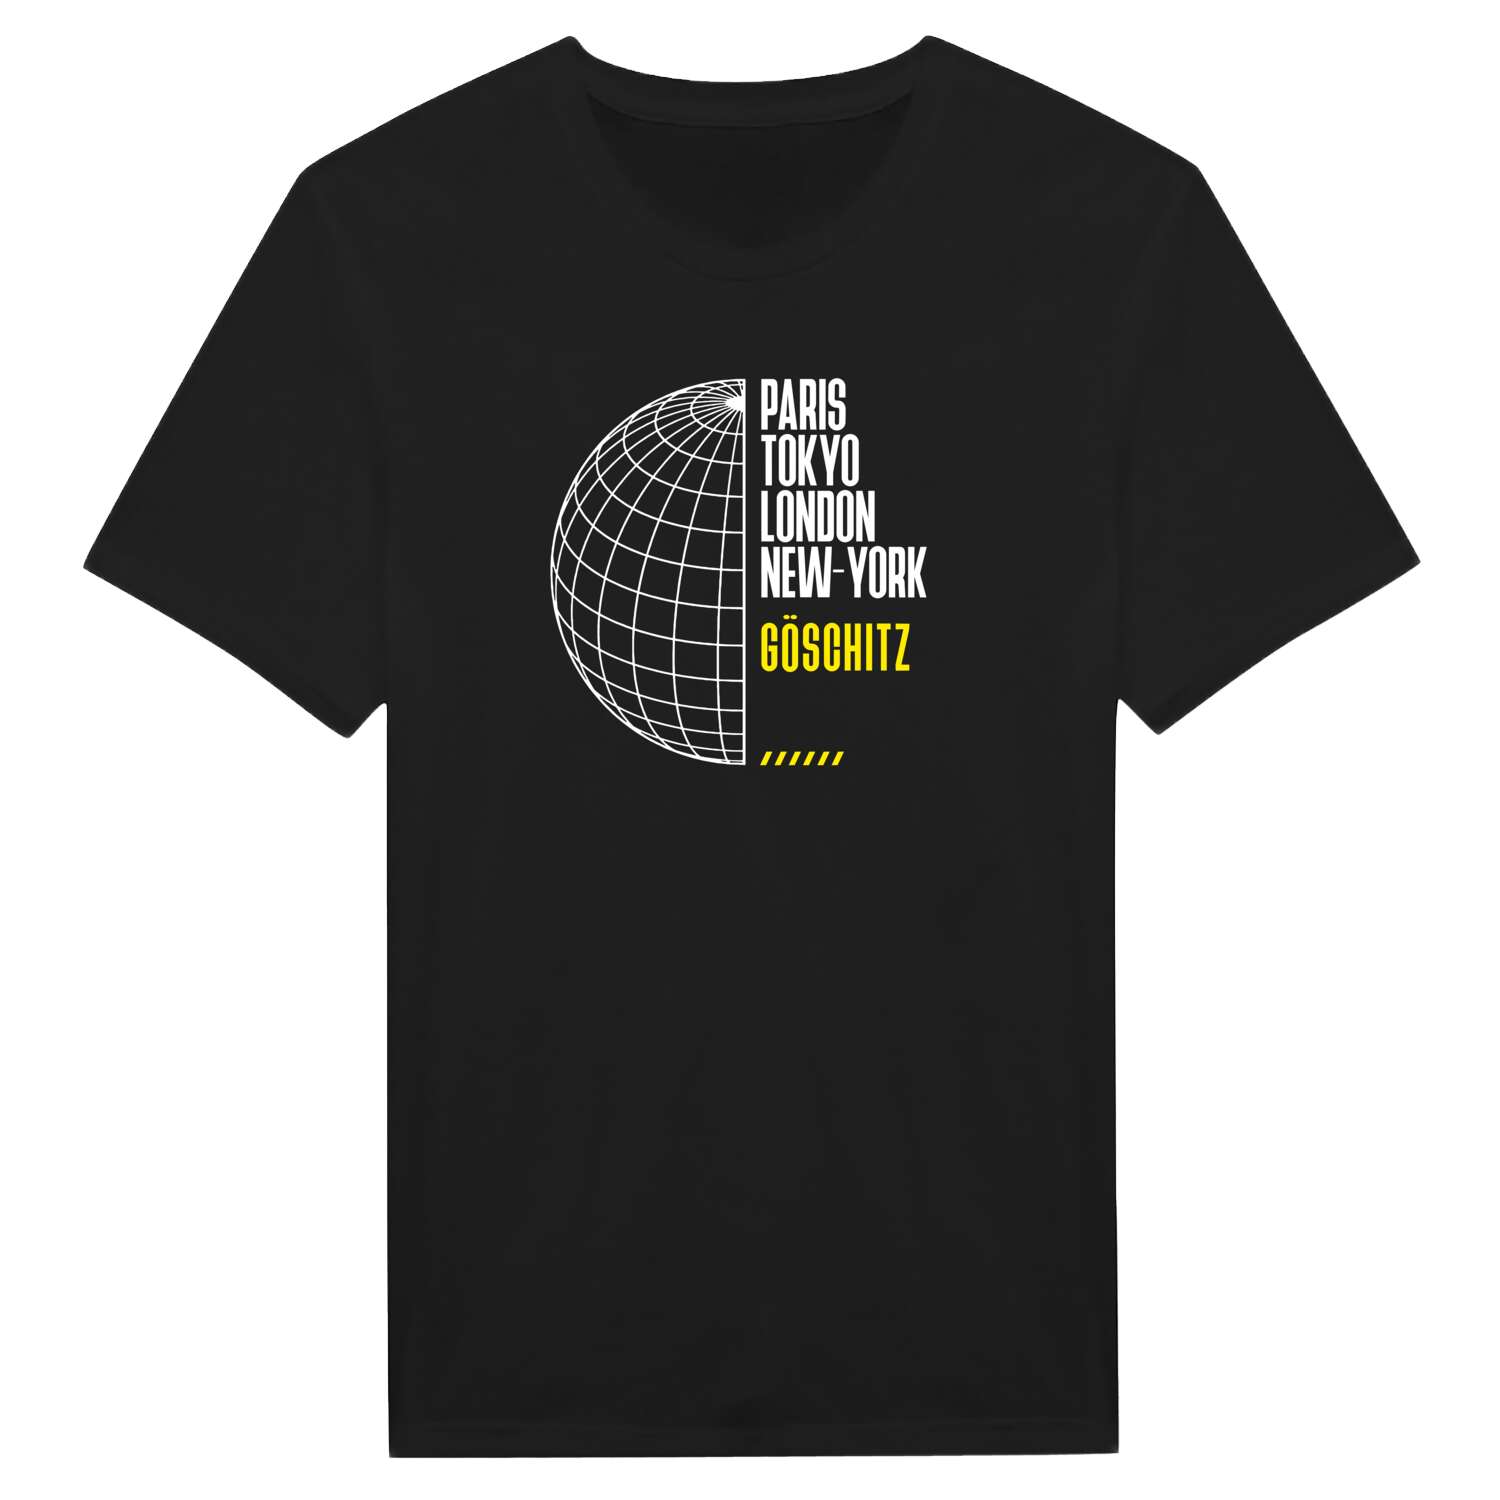 Göschitz T-Shirt »Paris Tokyo London«